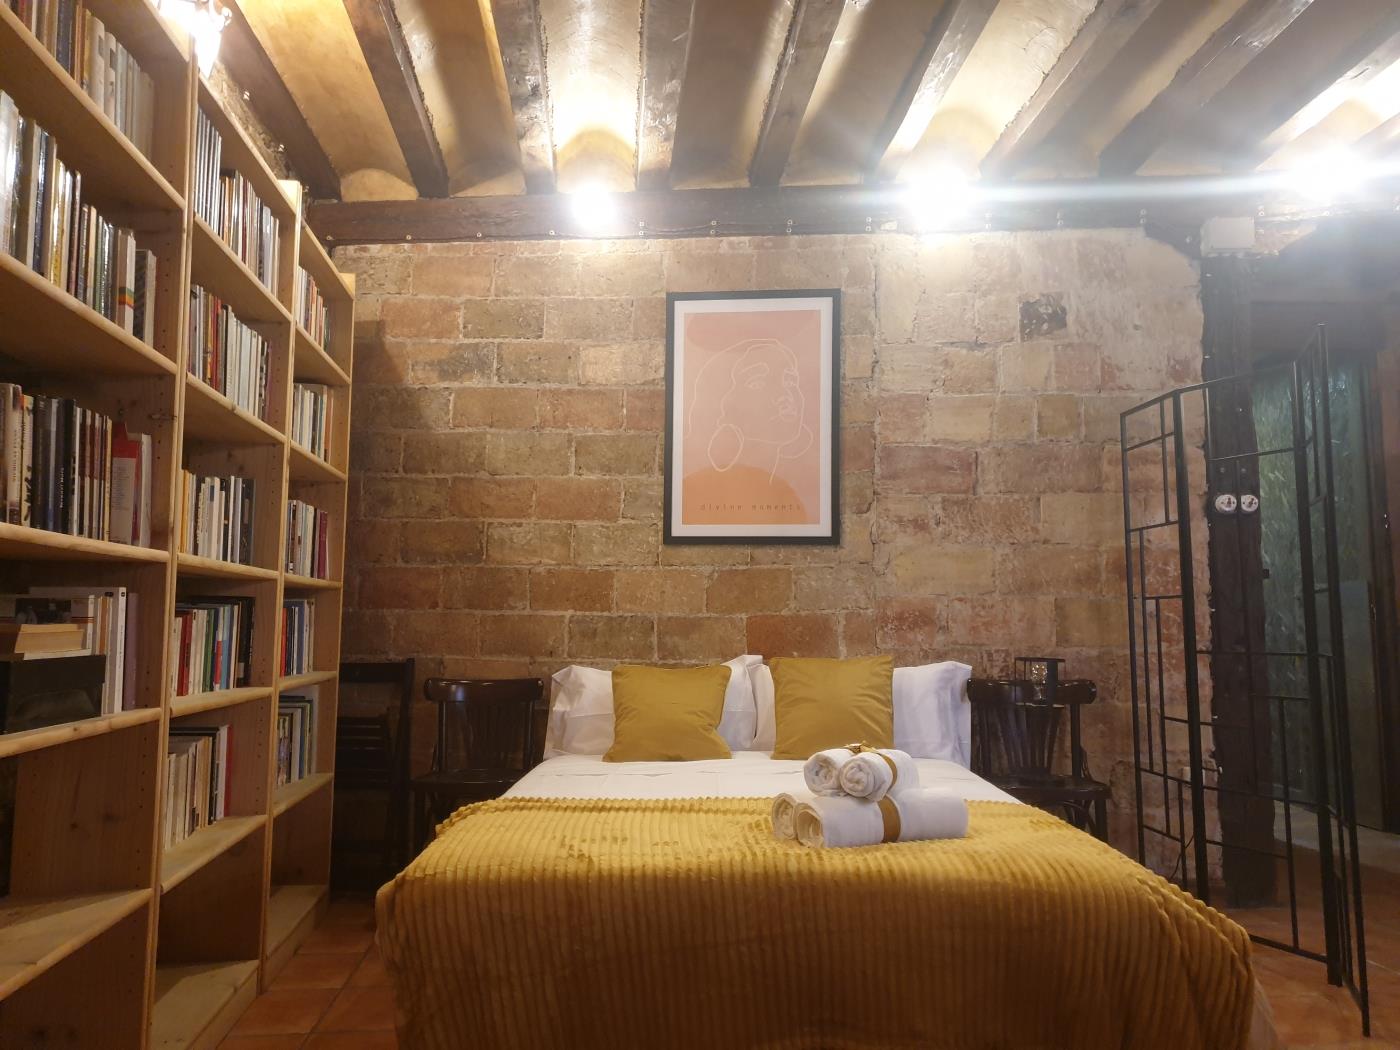 Casa Chusco, a charming corner by El Rincon in Logroño